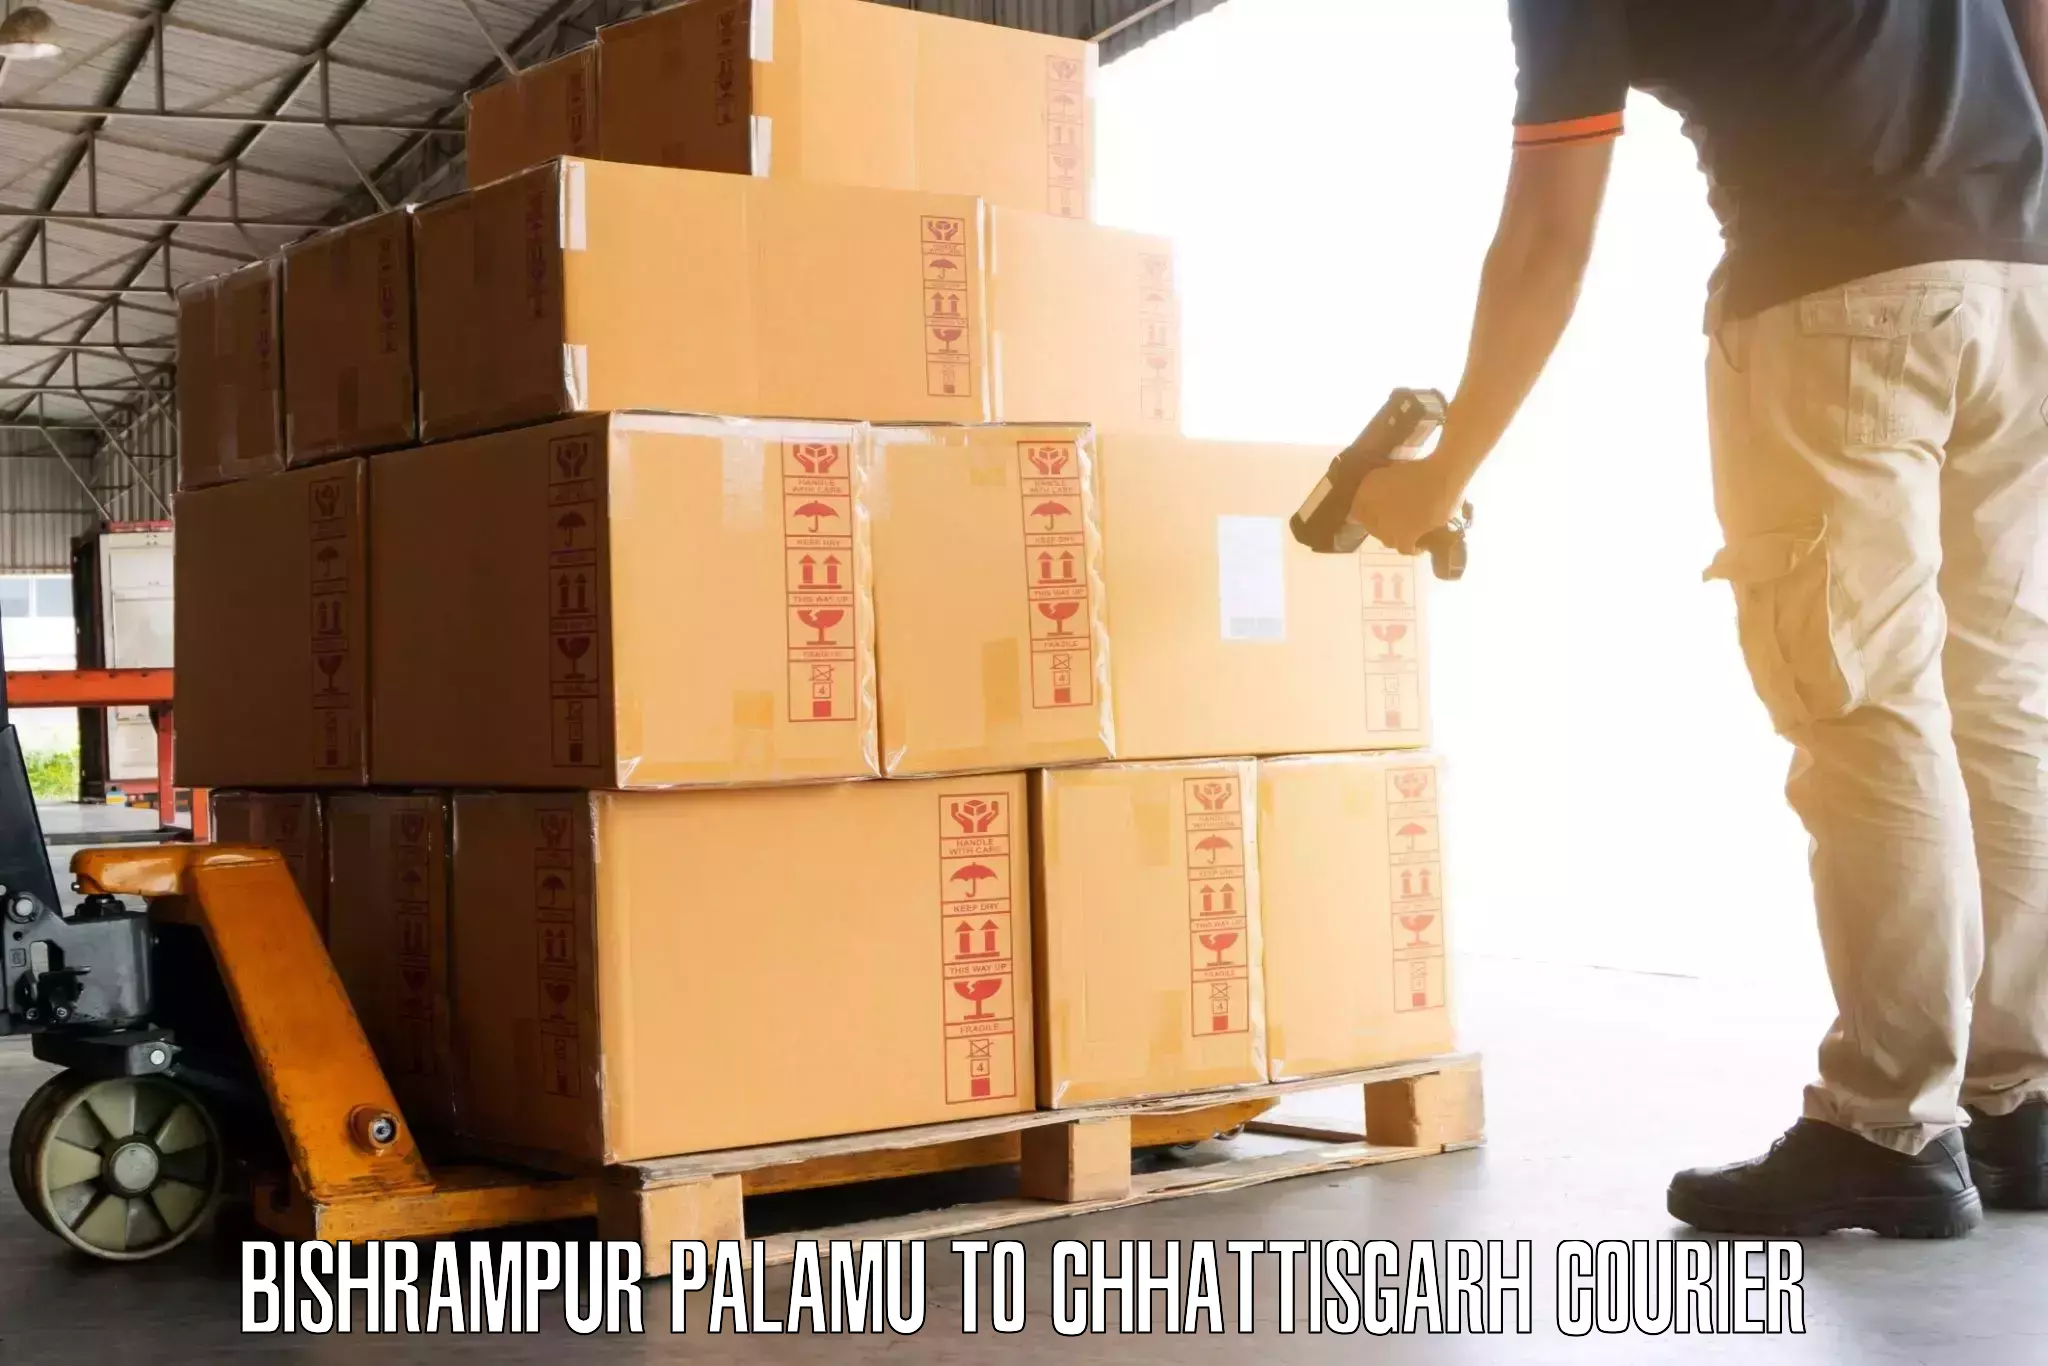 Luggage dispatch service Bishrampur Palamu to Khairagarh